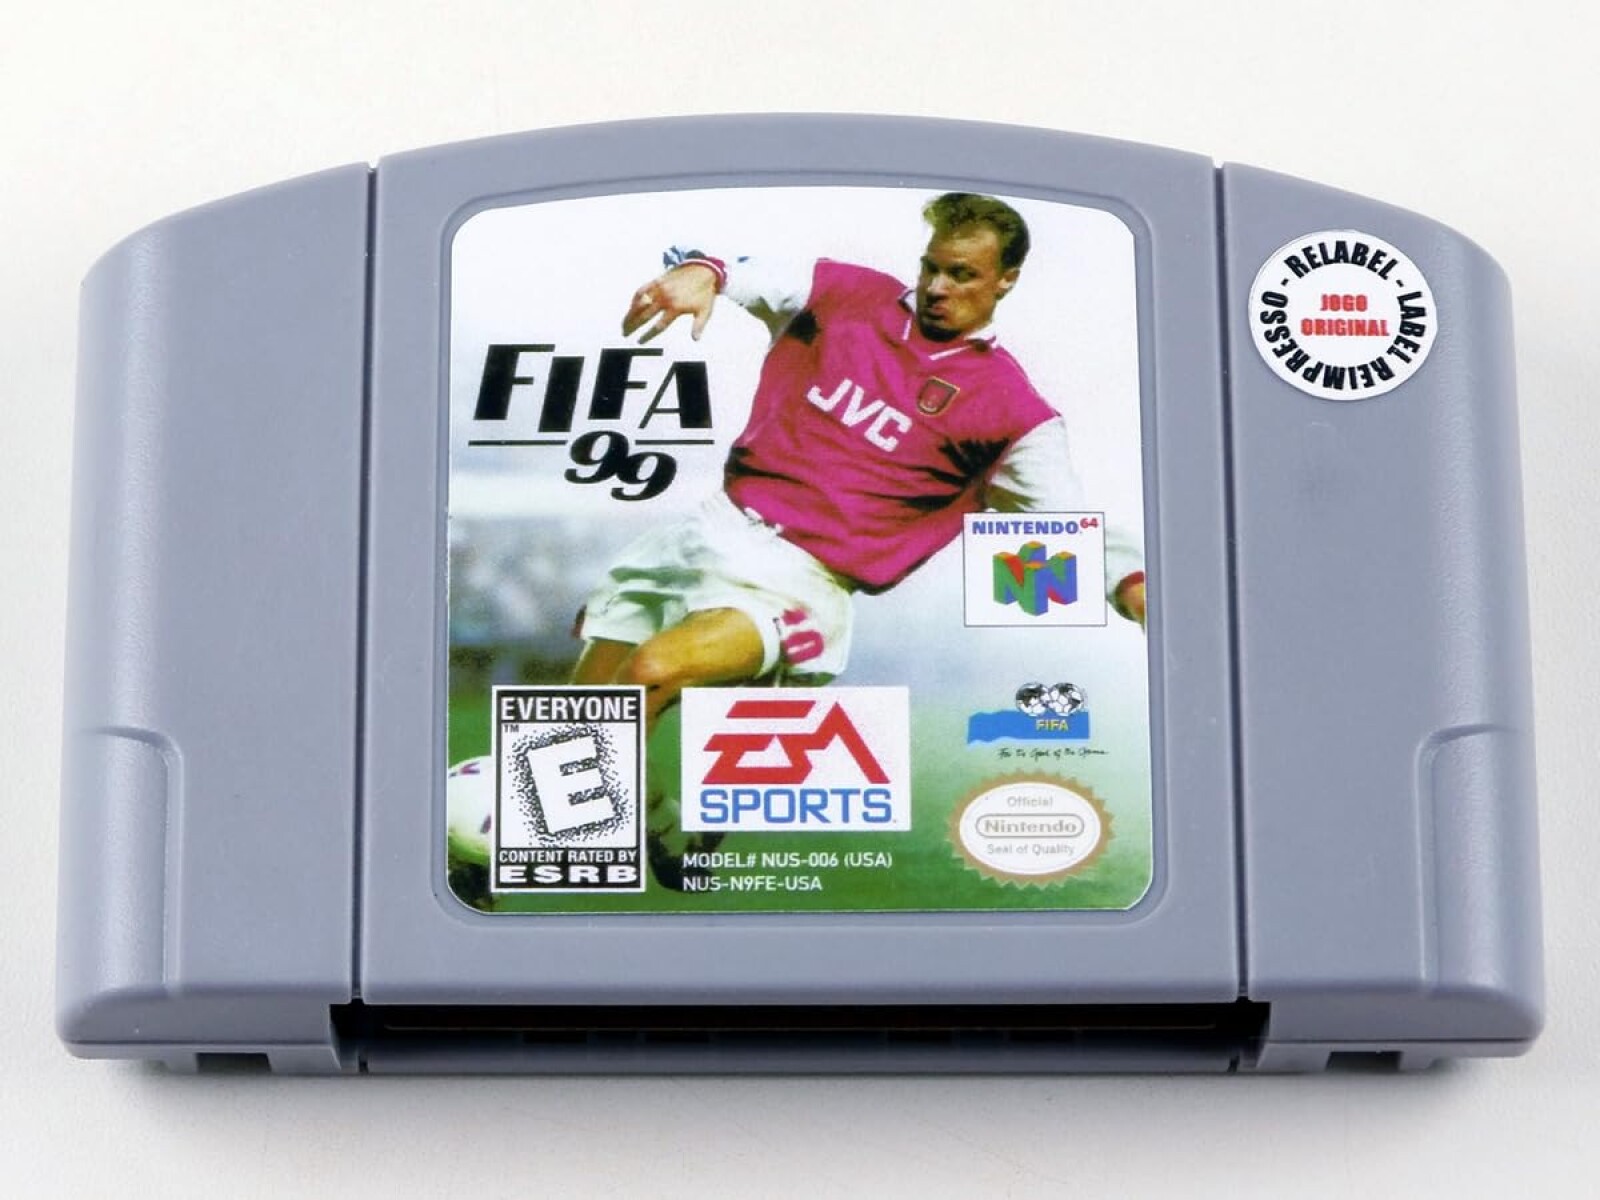 FIFA 99 